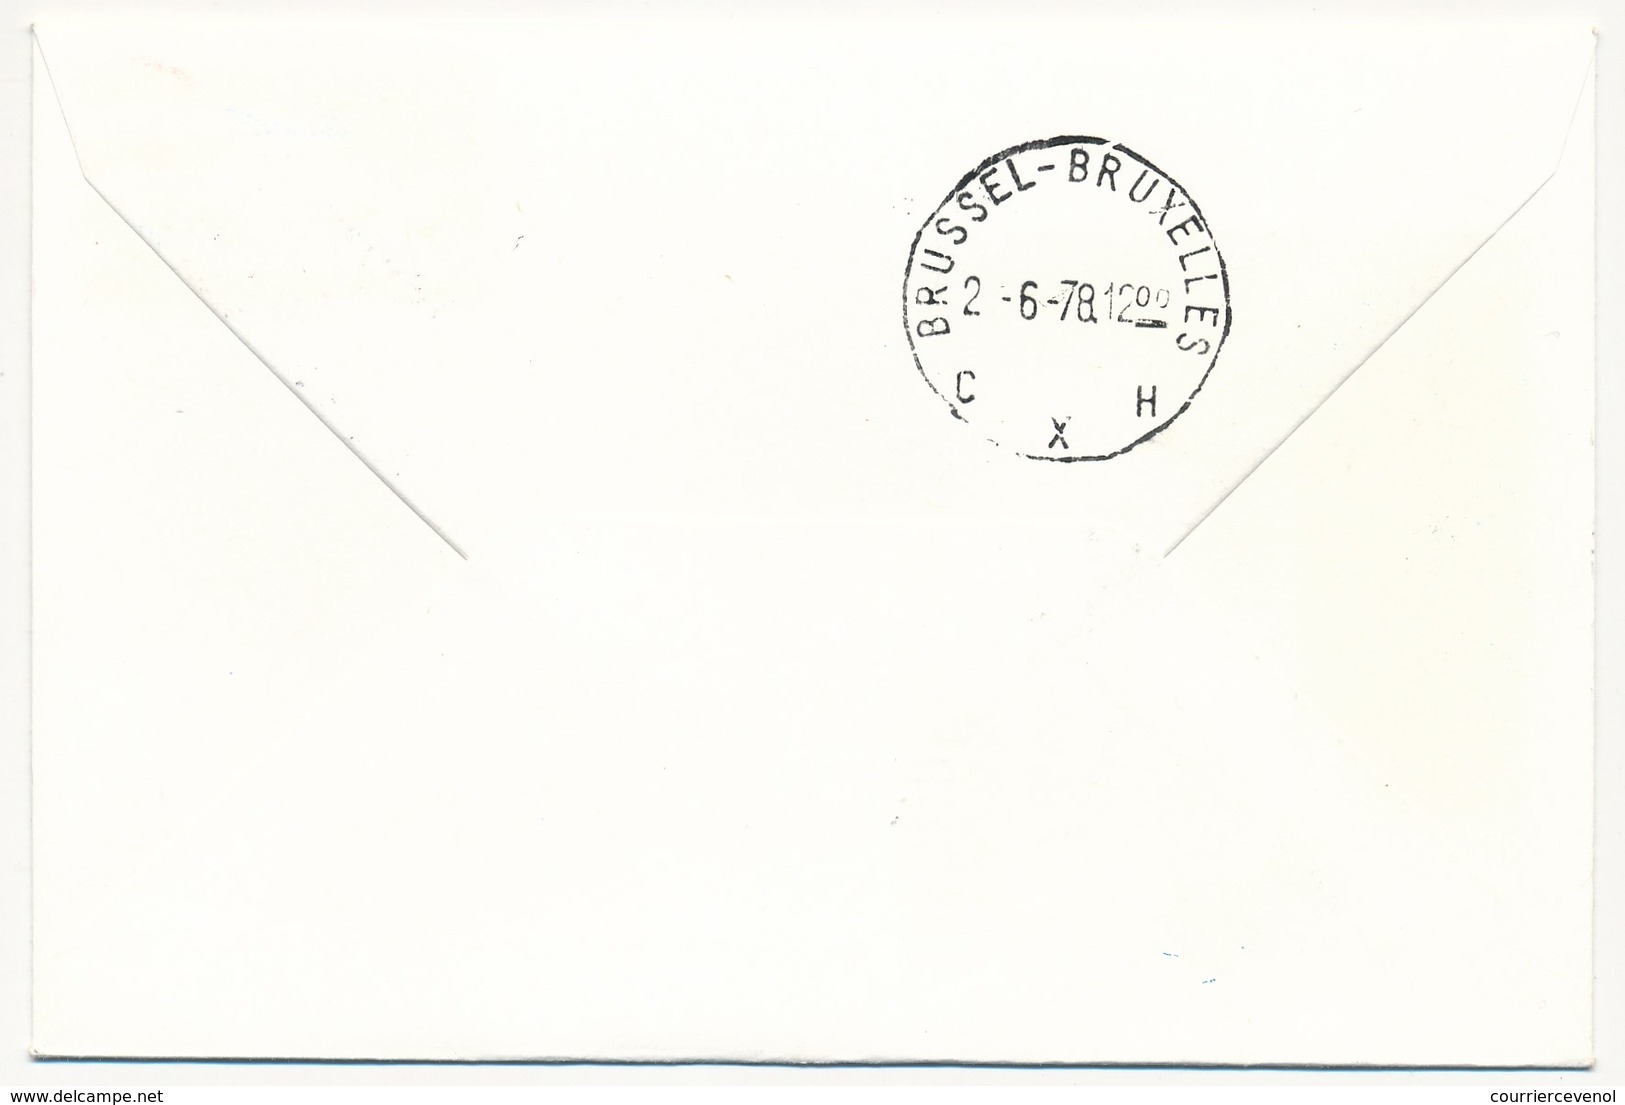 USA / BELGIQUE - 2 Enveloppes SABENA - 1ere Liaison Aérienne - ATLANTA BRUSSELS - 1.6.1978 Et Retour - 3c. 1961-... Covers